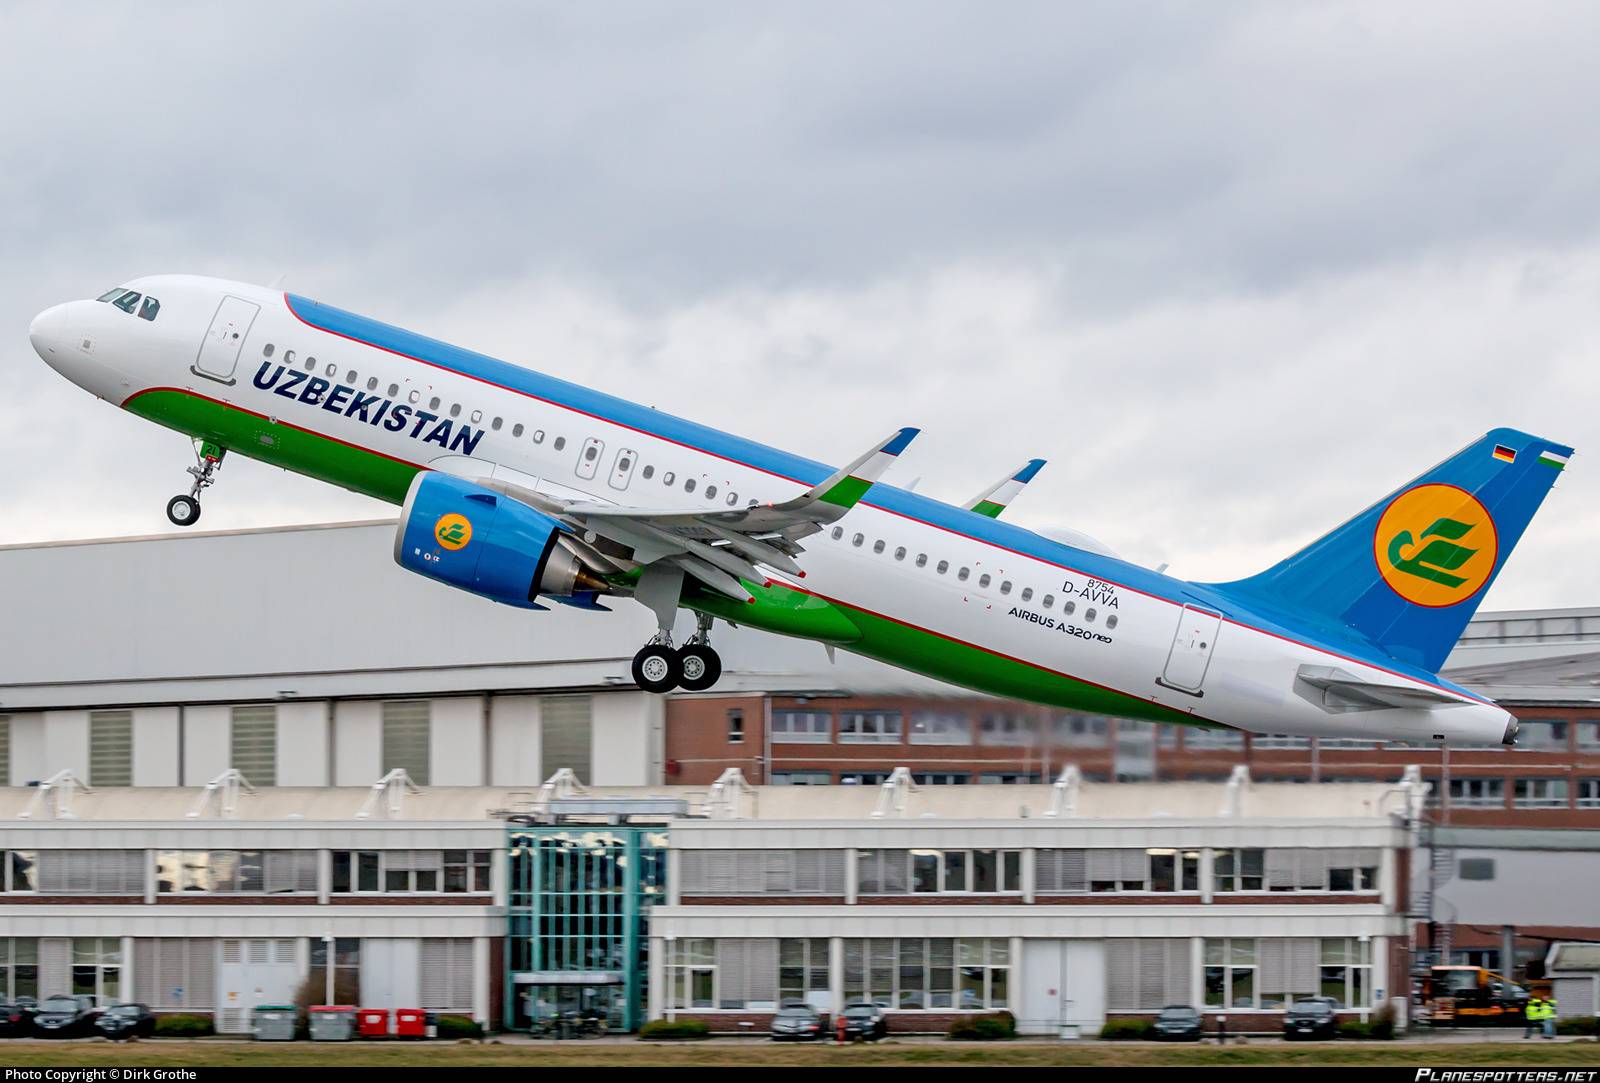 Uzbekistan airways - отзывы пассажиров 2017-2018 про авиакомпанию узбекские авиалинии - страница №5